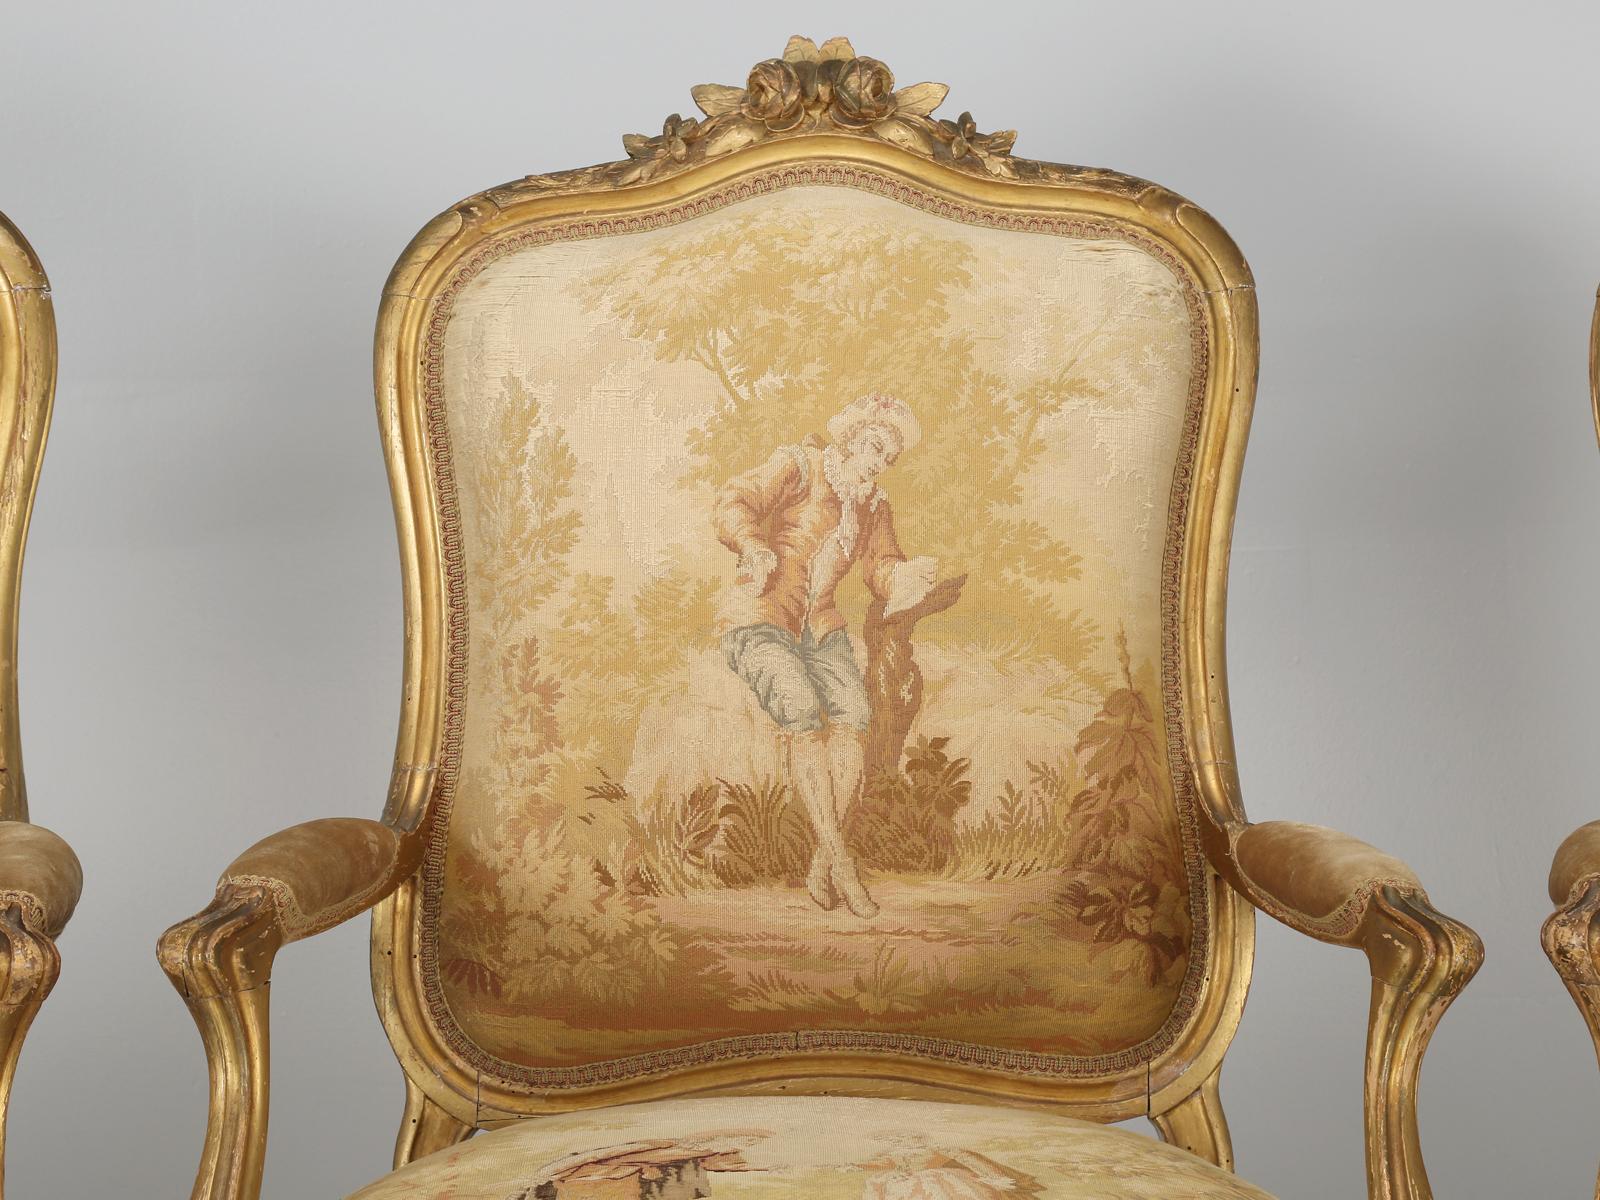 Fauteuils anciens de style Louis XV dans une suite de (4) fauteuils anciens français assortis dans leur tissu épais d'origine inspiré d'Aubusson. Les cadres dorés sont d'origine et ont été restaurés sur le plan structurel, mais sont restés d'origine